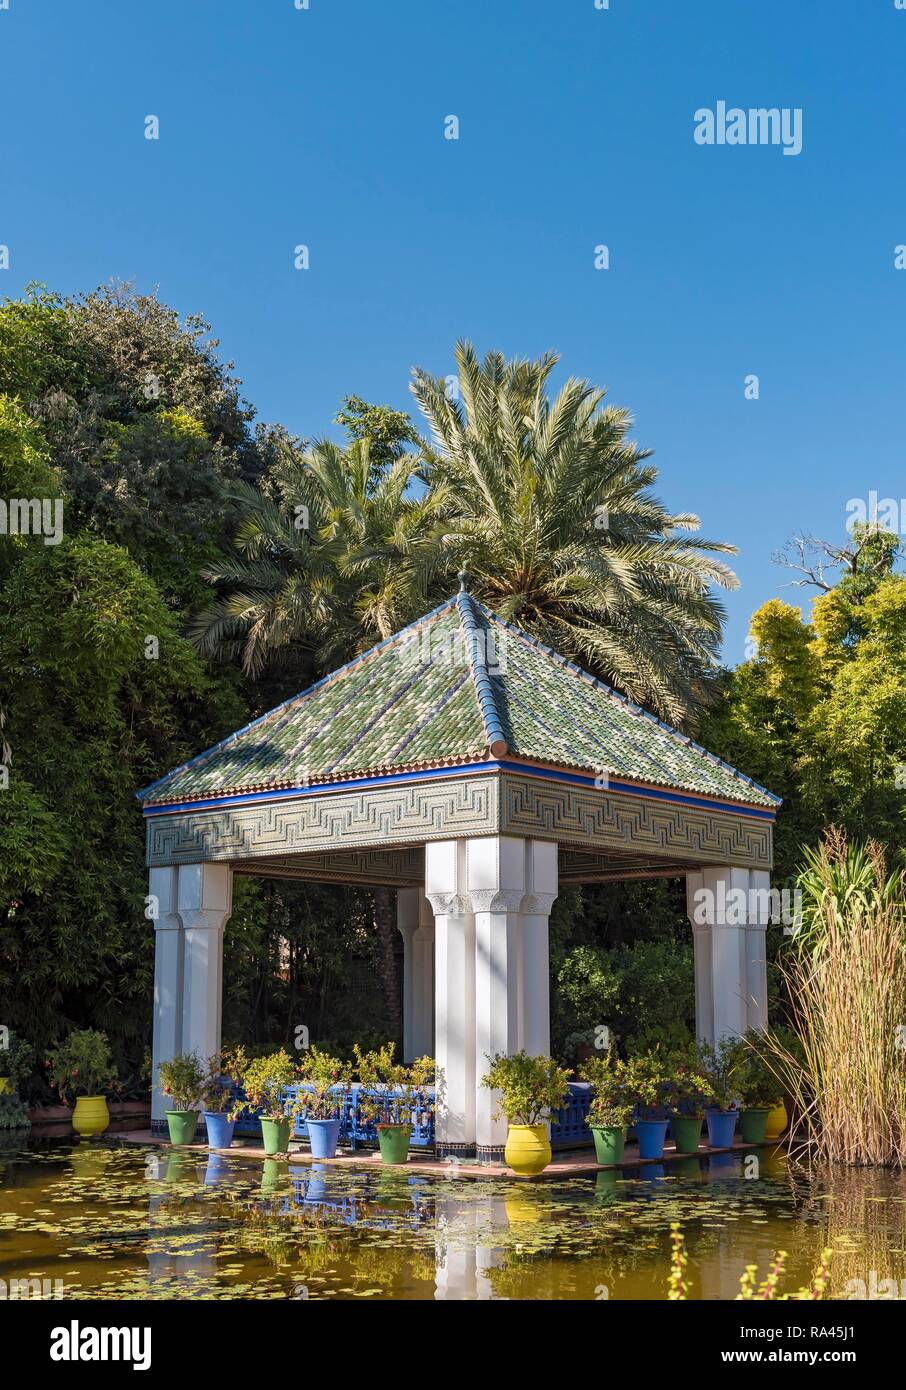 Pavilion at Jardin Majorelle Botanical Garden, Marrakech, Morocco Stock Photo